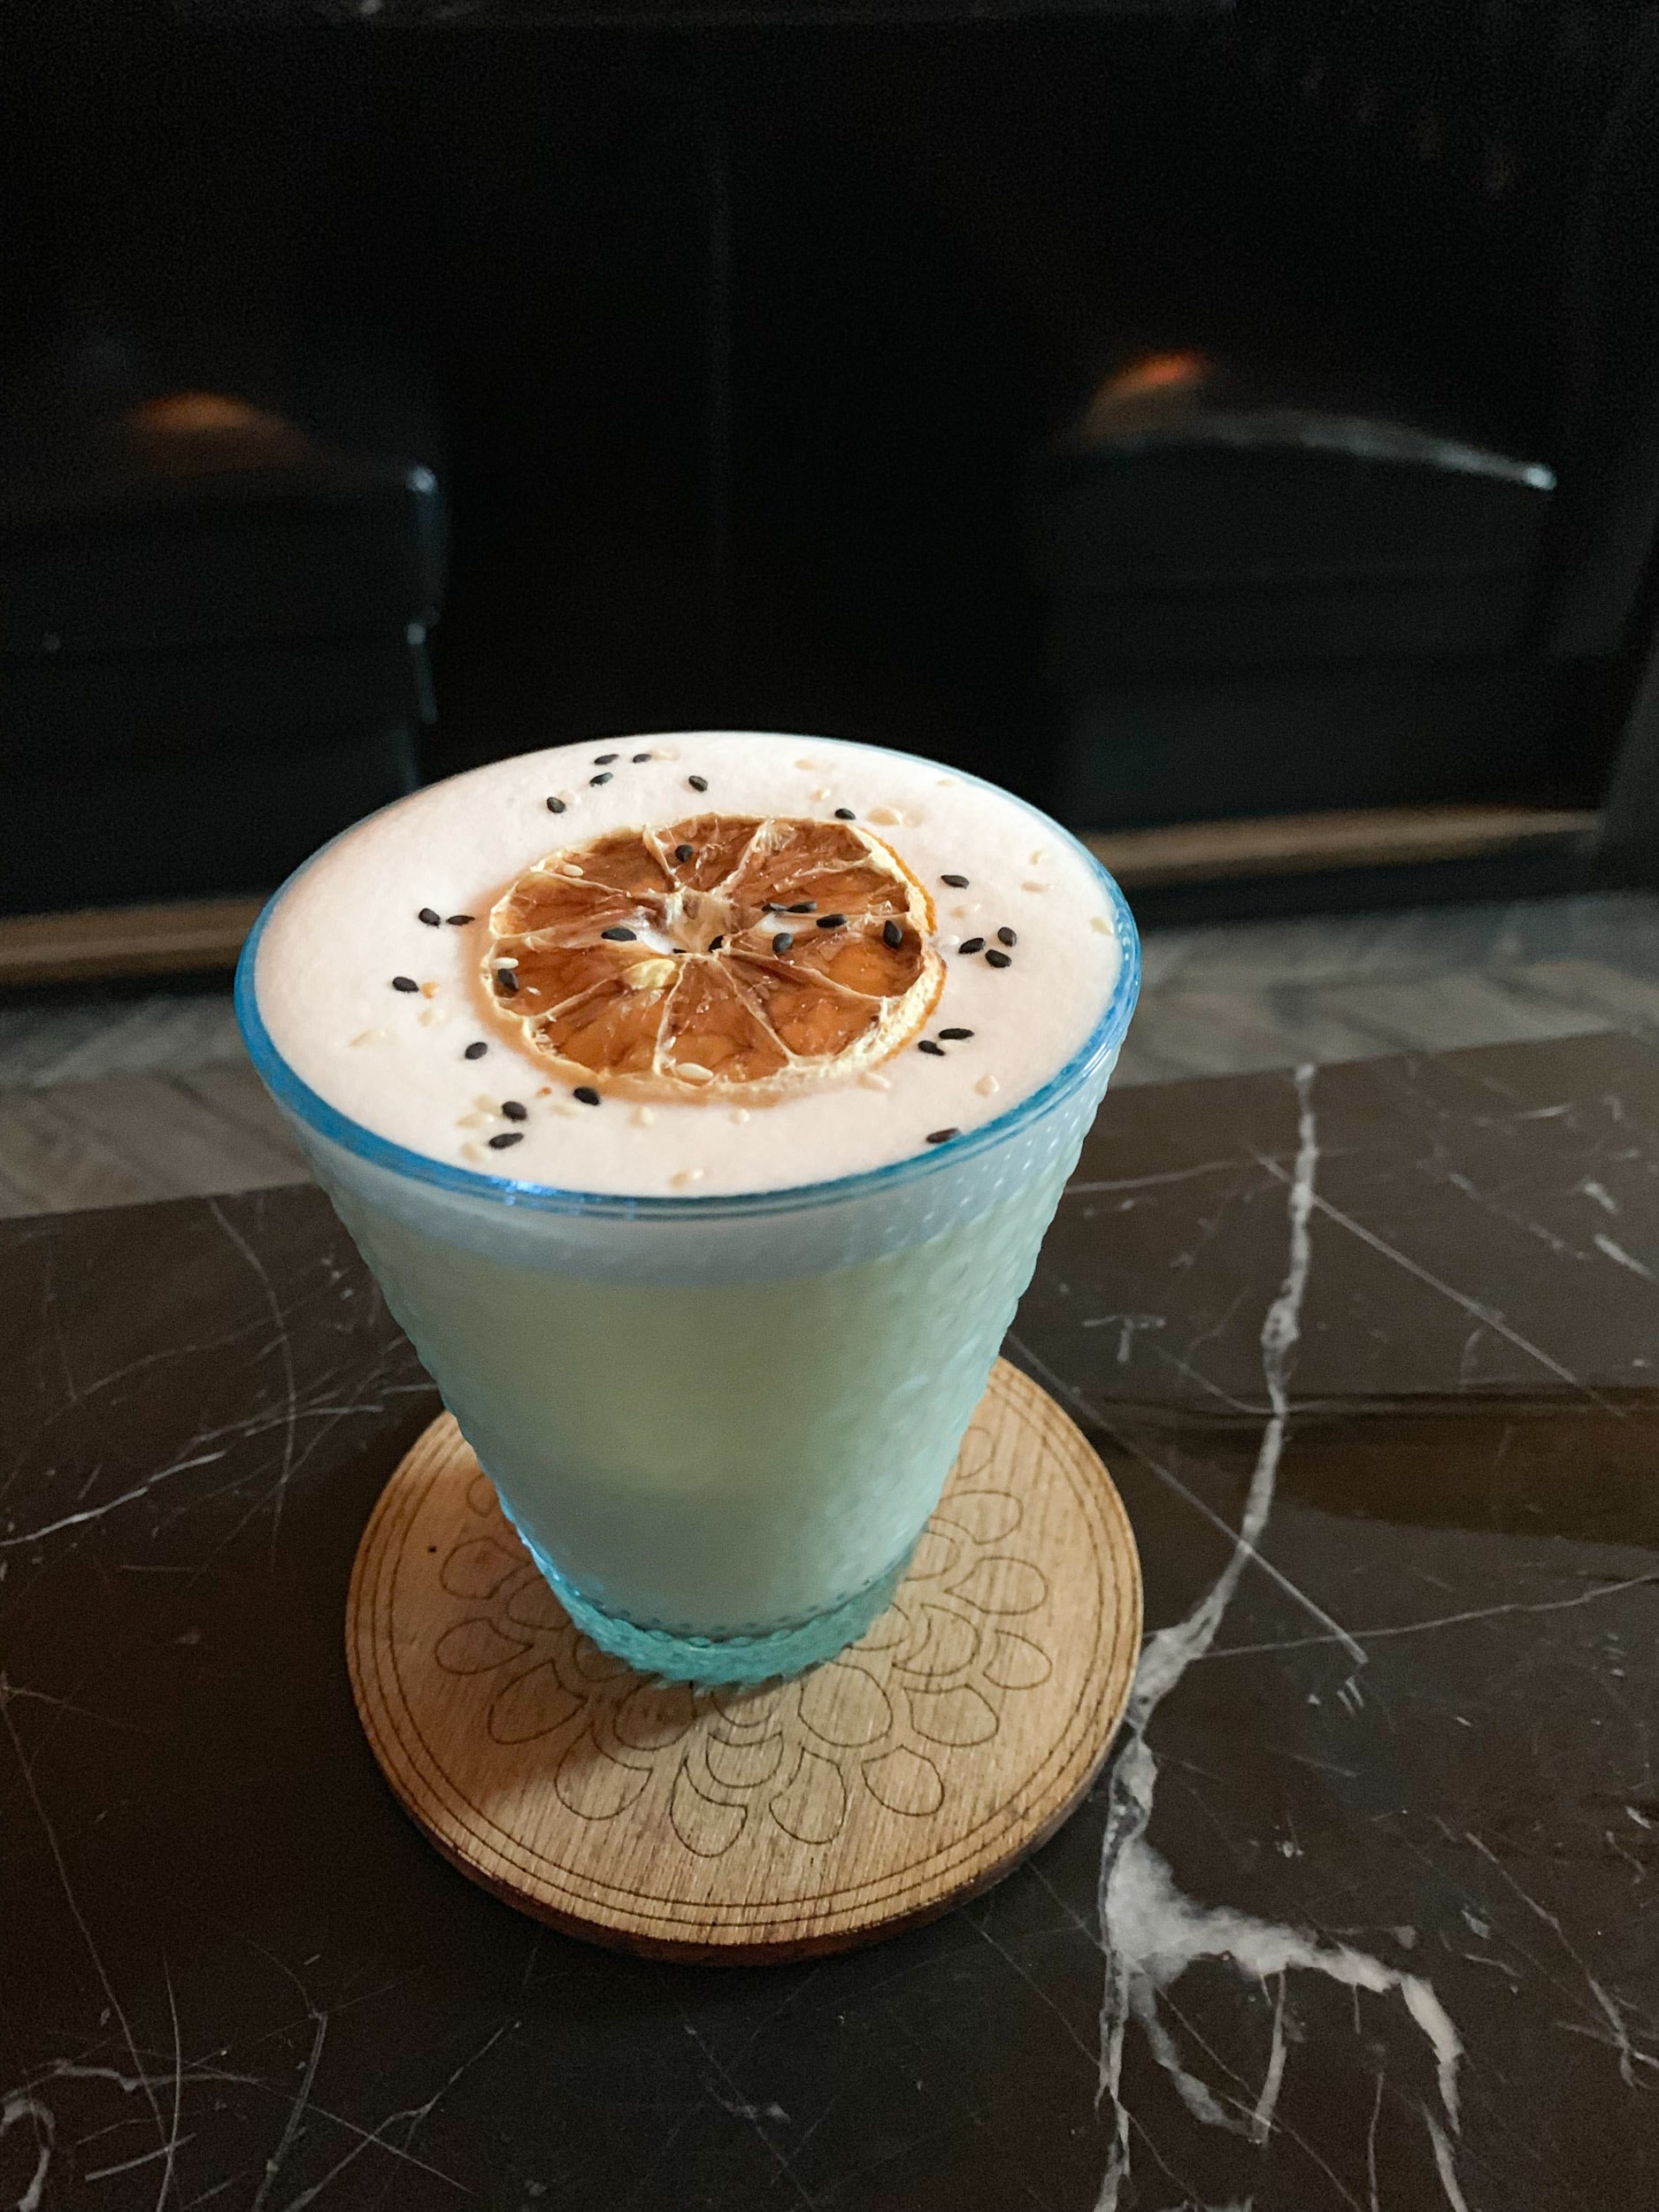 Yah-Sas cocktail